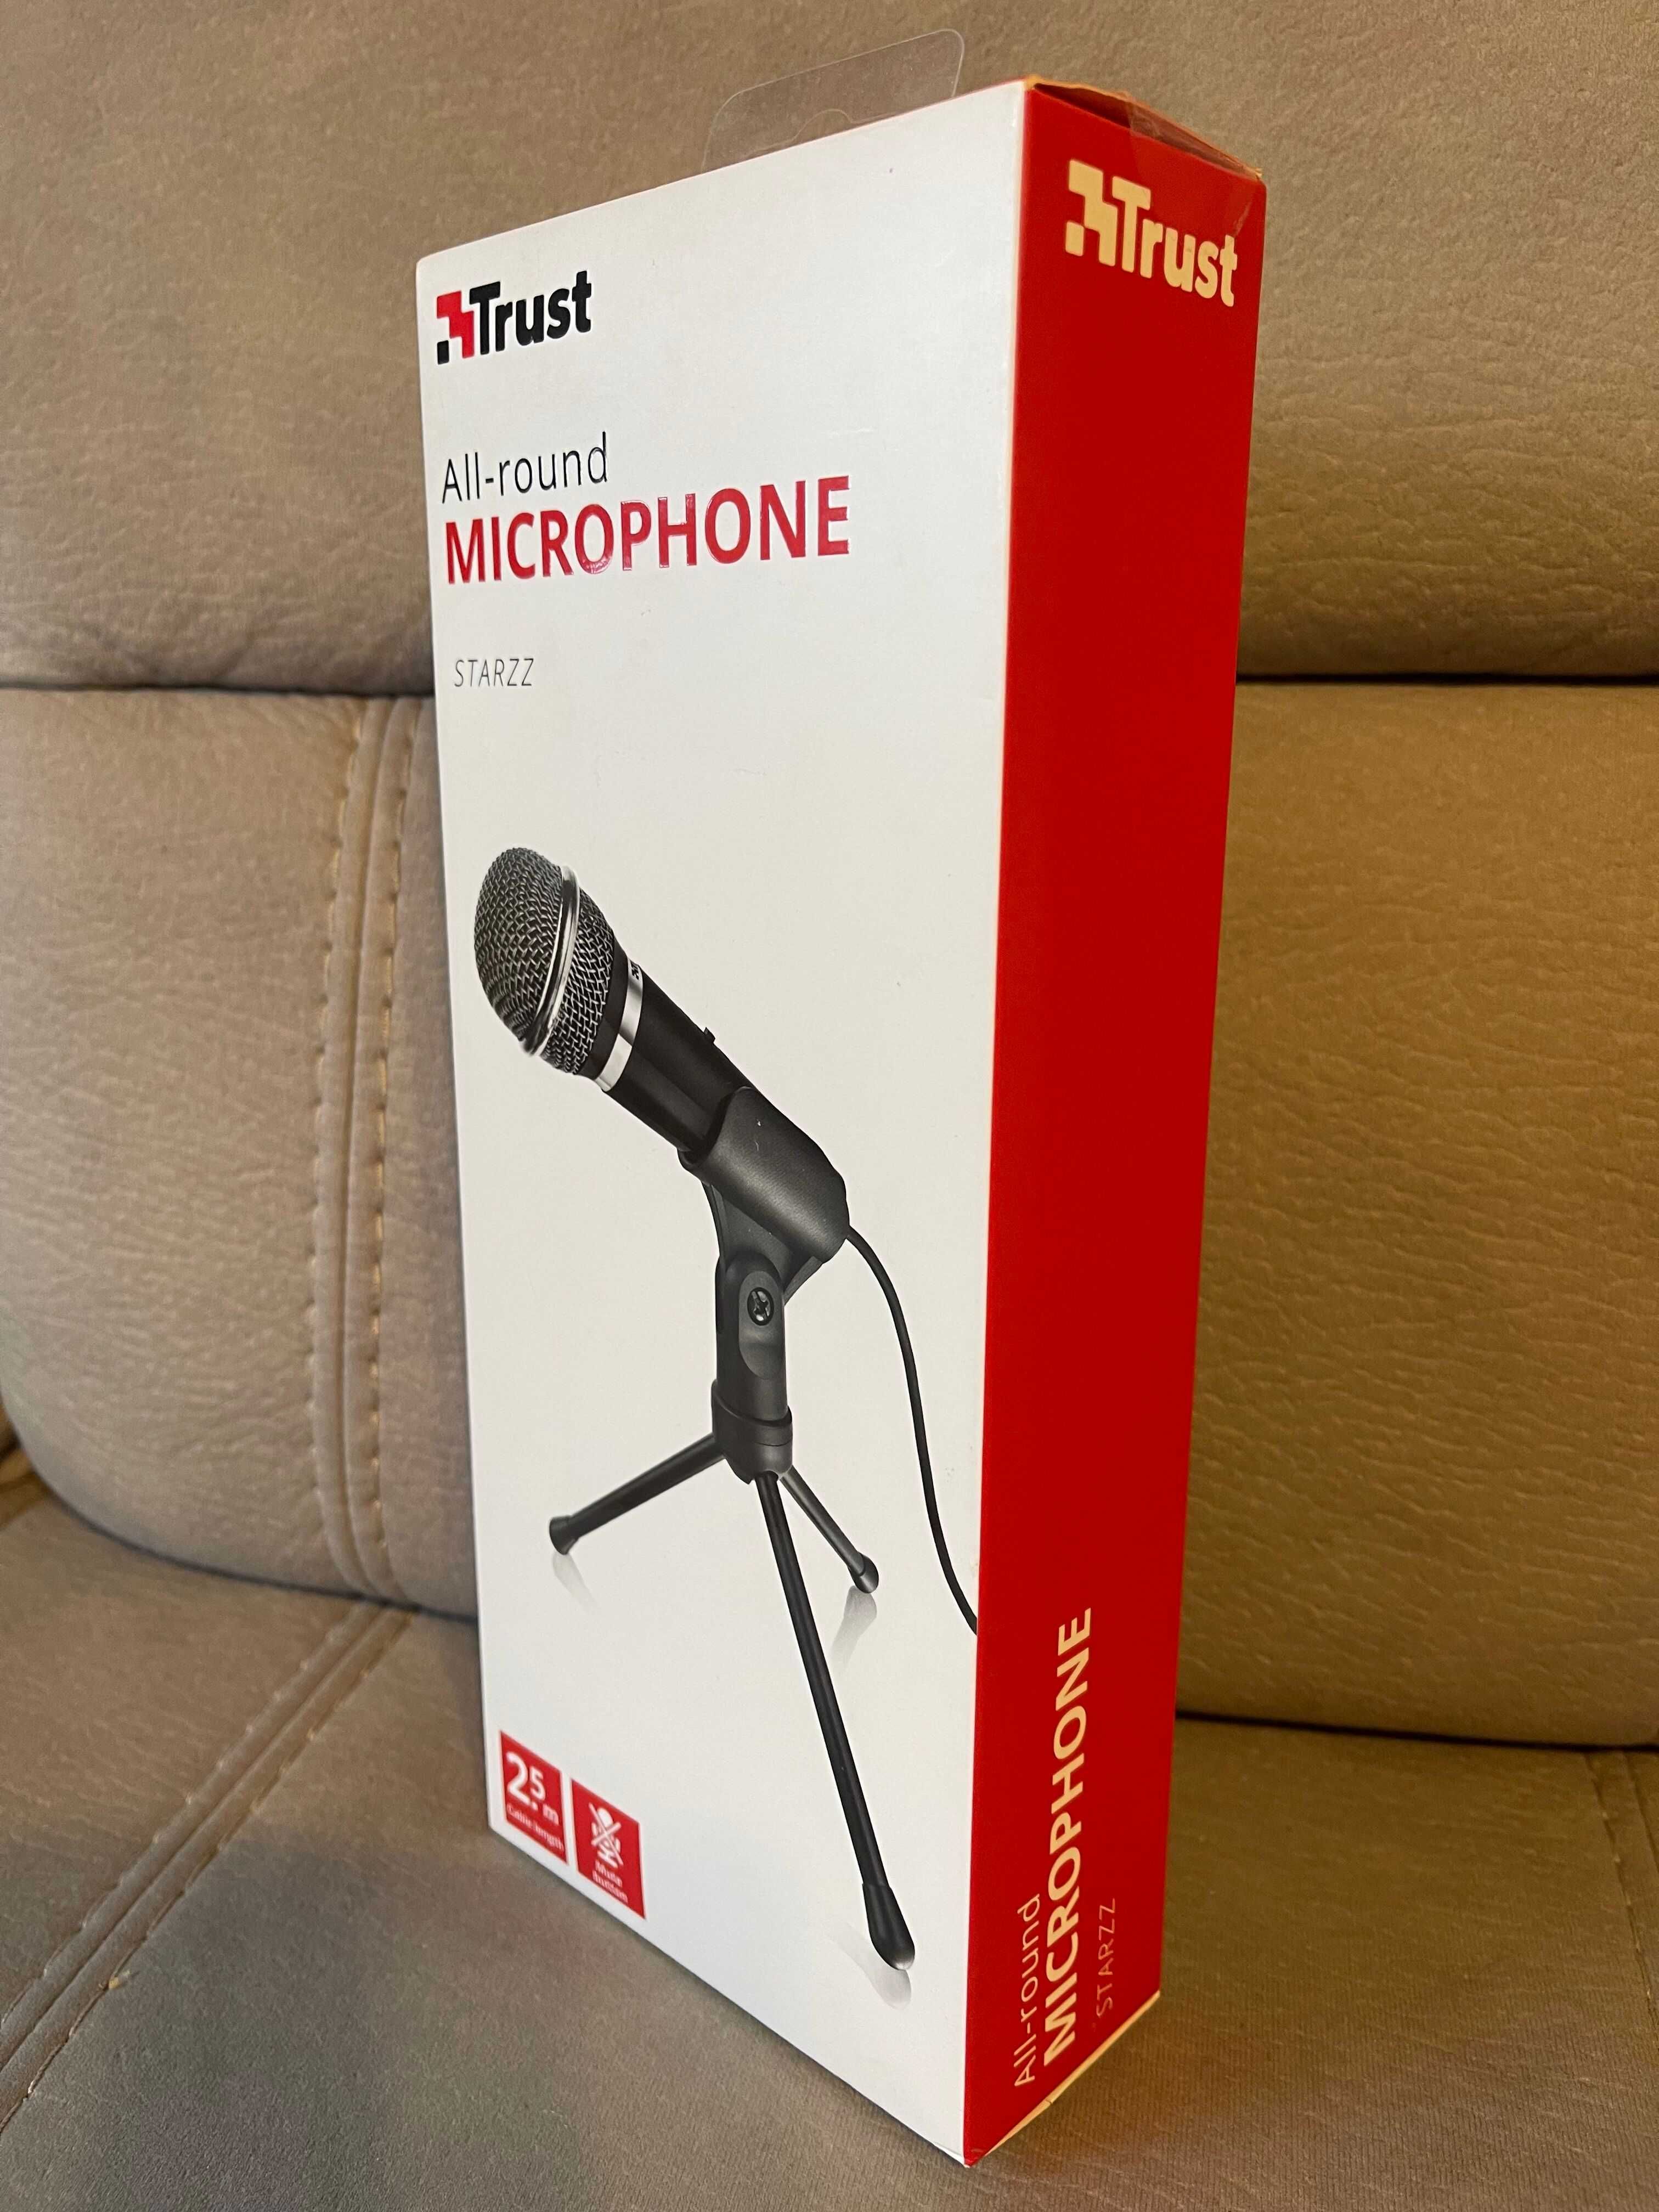 Mikrofon TRUST Starzz All-round Microphone Nowy oryginalnie zapakowany